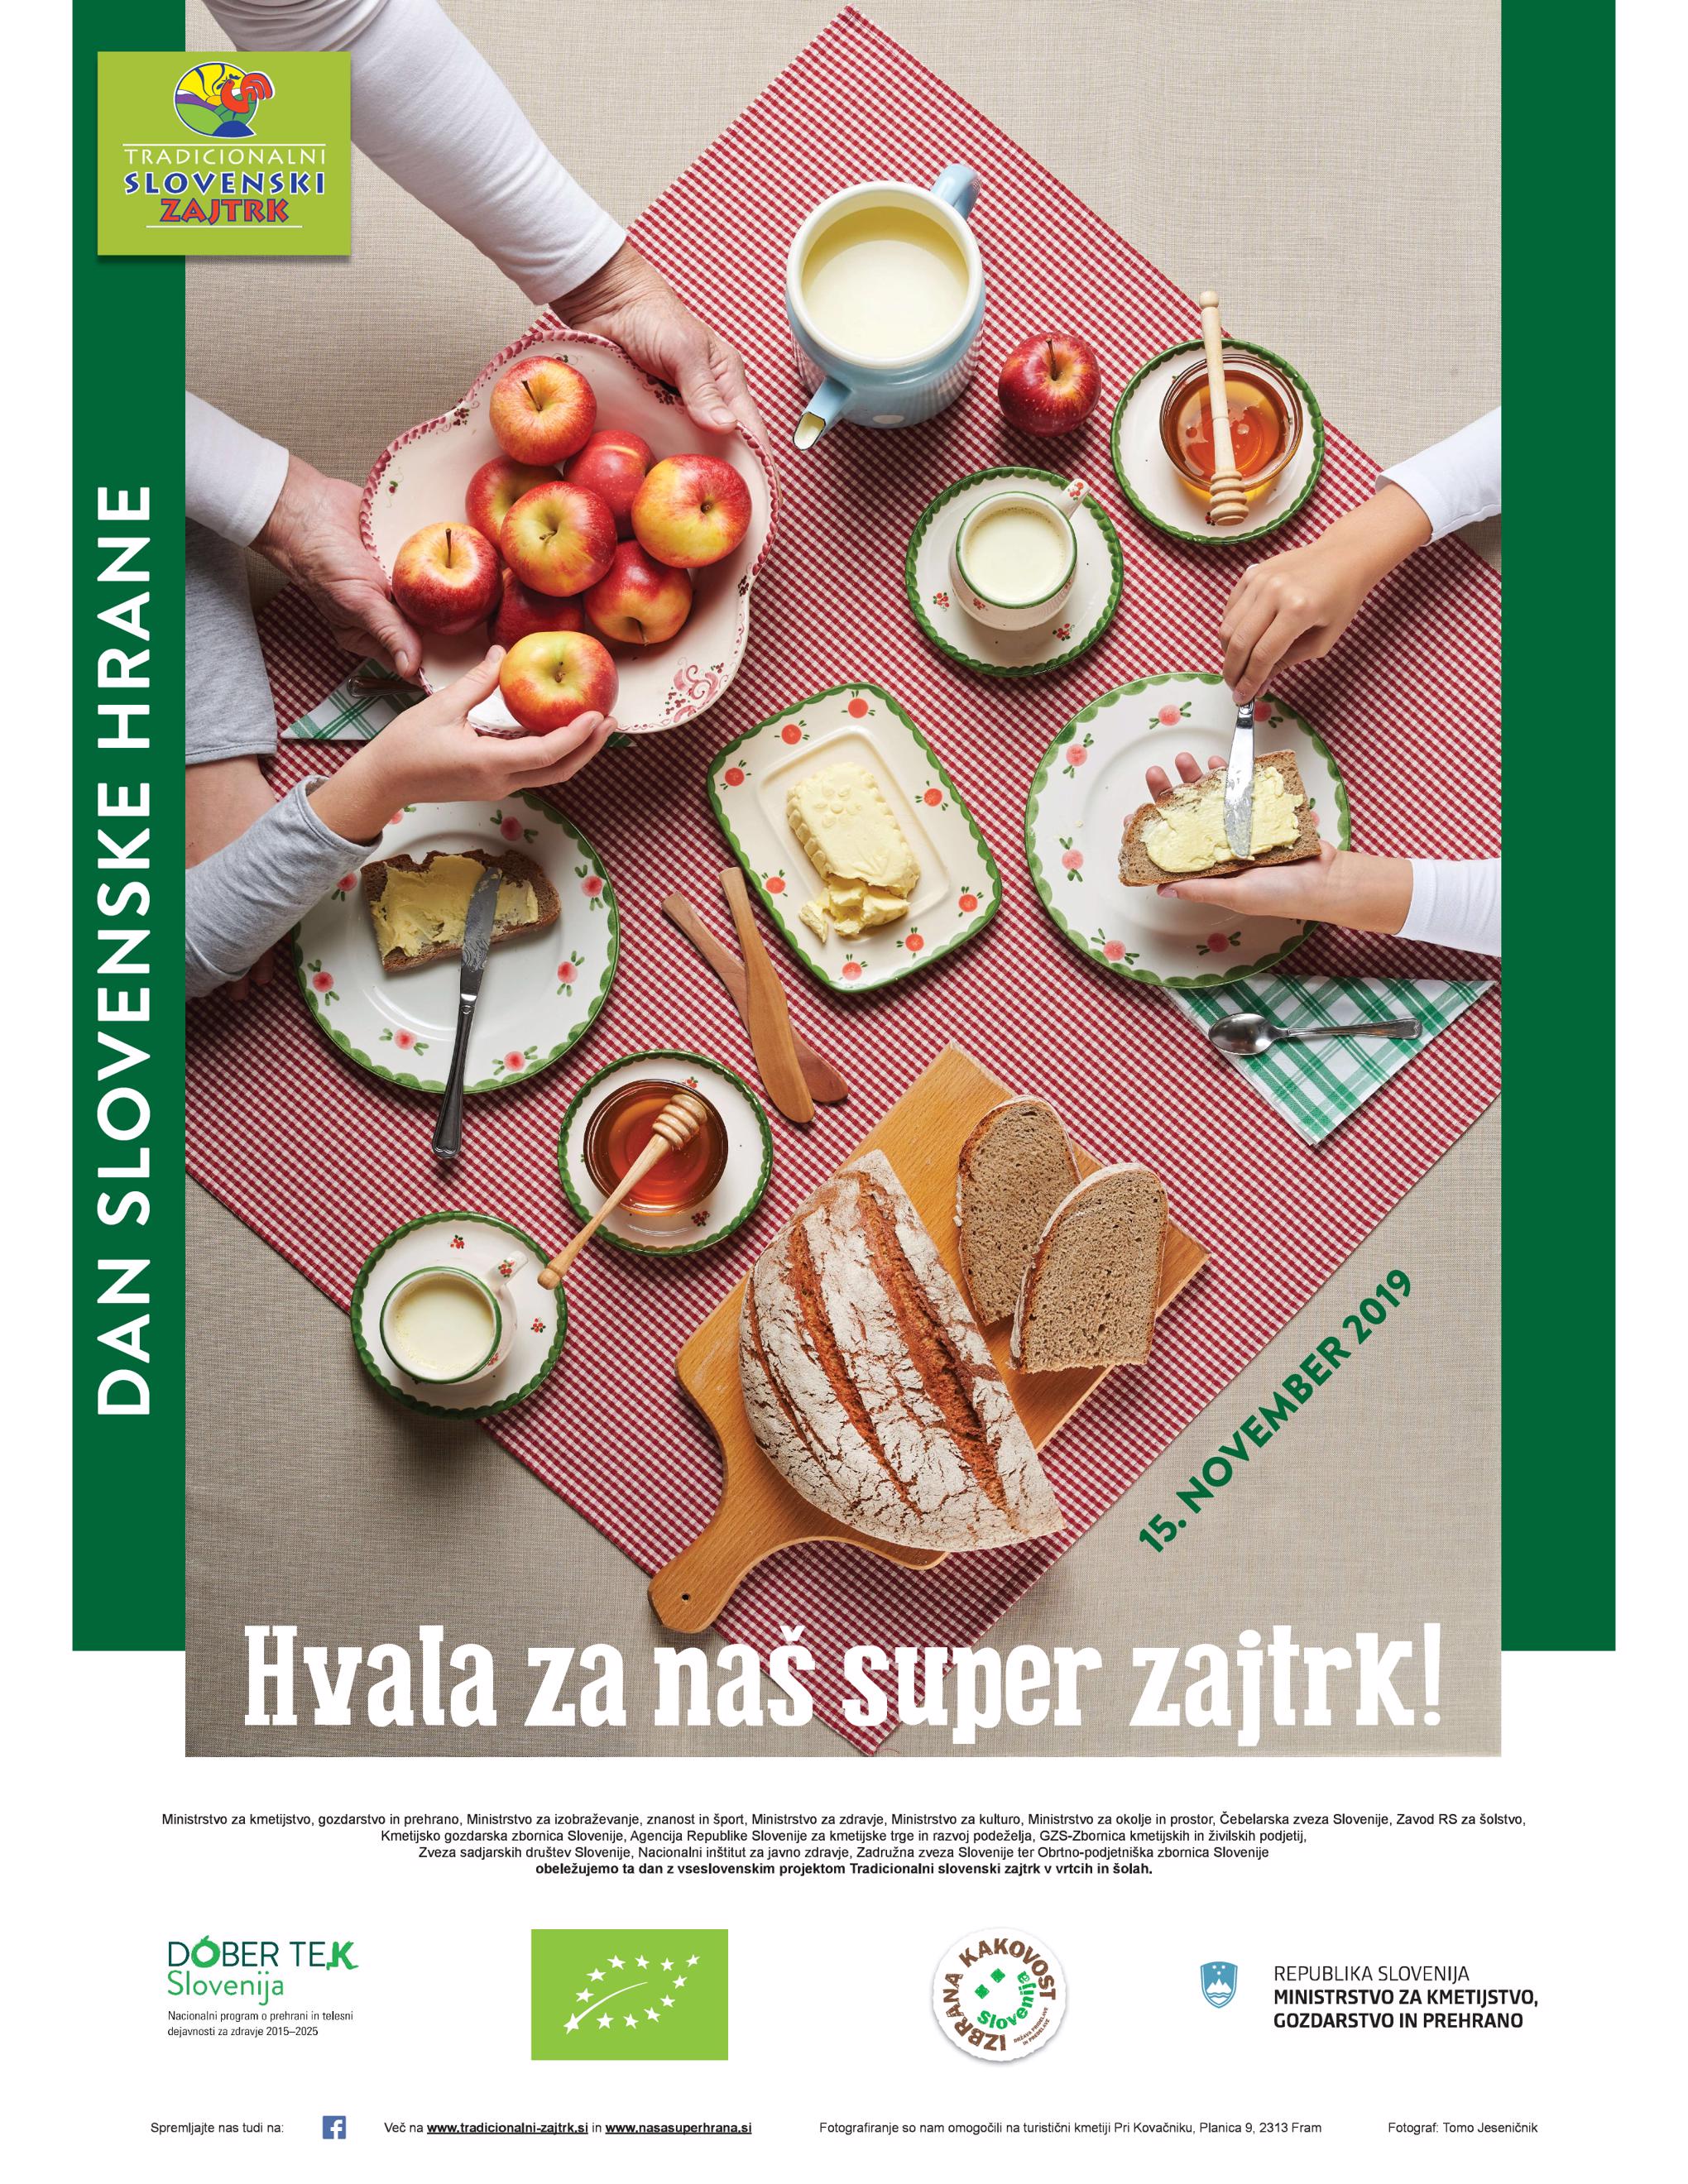 Tradicionalni slovenski zajtrk plakat p001 2040x2640